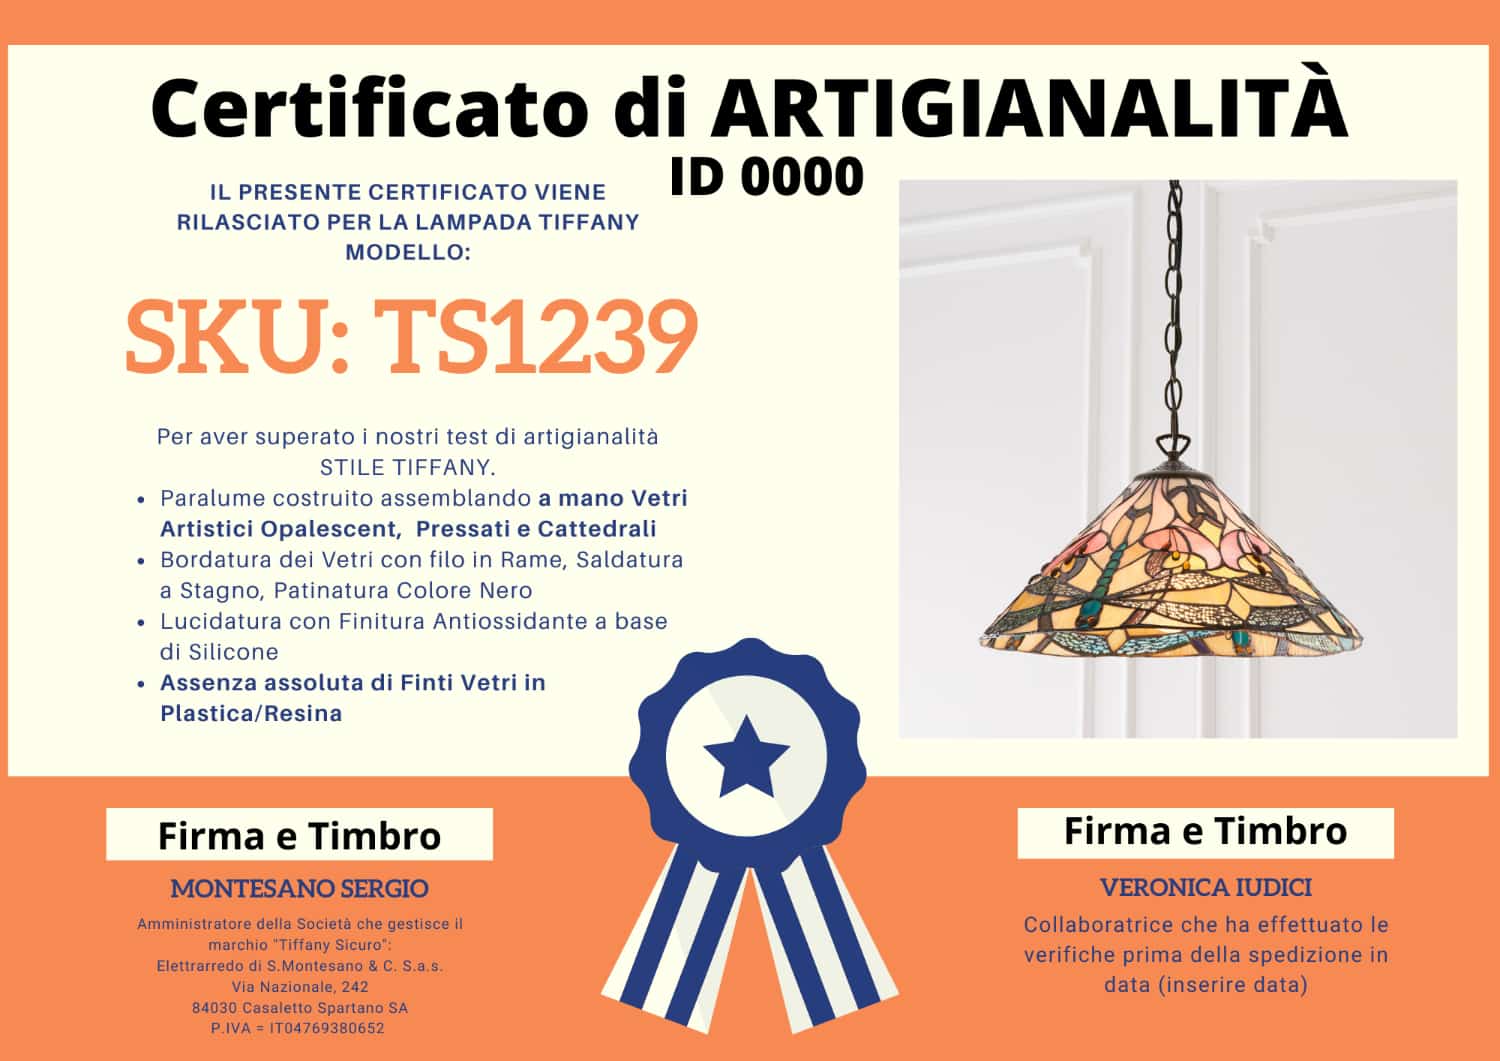 Lampadario Tiffany Liberty, certificato